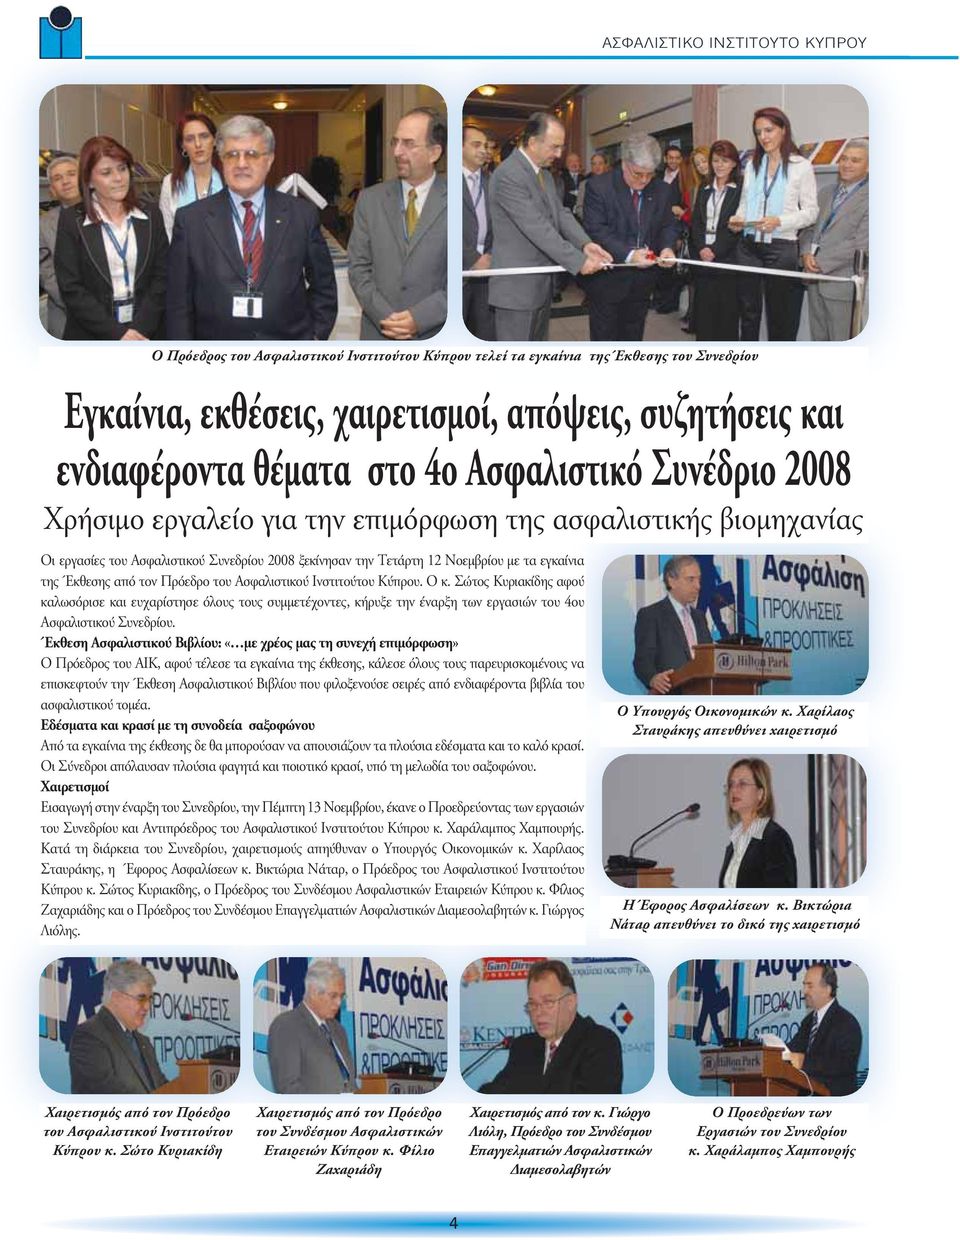 Ασφαλιστικού Ινστιτούτου Κύπρου. Ο κ. Σώτος Κυριακίδης αφού καλωσόρισε και ευχαρίστησε όλους τους συμμετέχοντες, κήρυξε την έναρξη των εργασιών του 4ου Ασφαλιστικού Συνεδρίου.